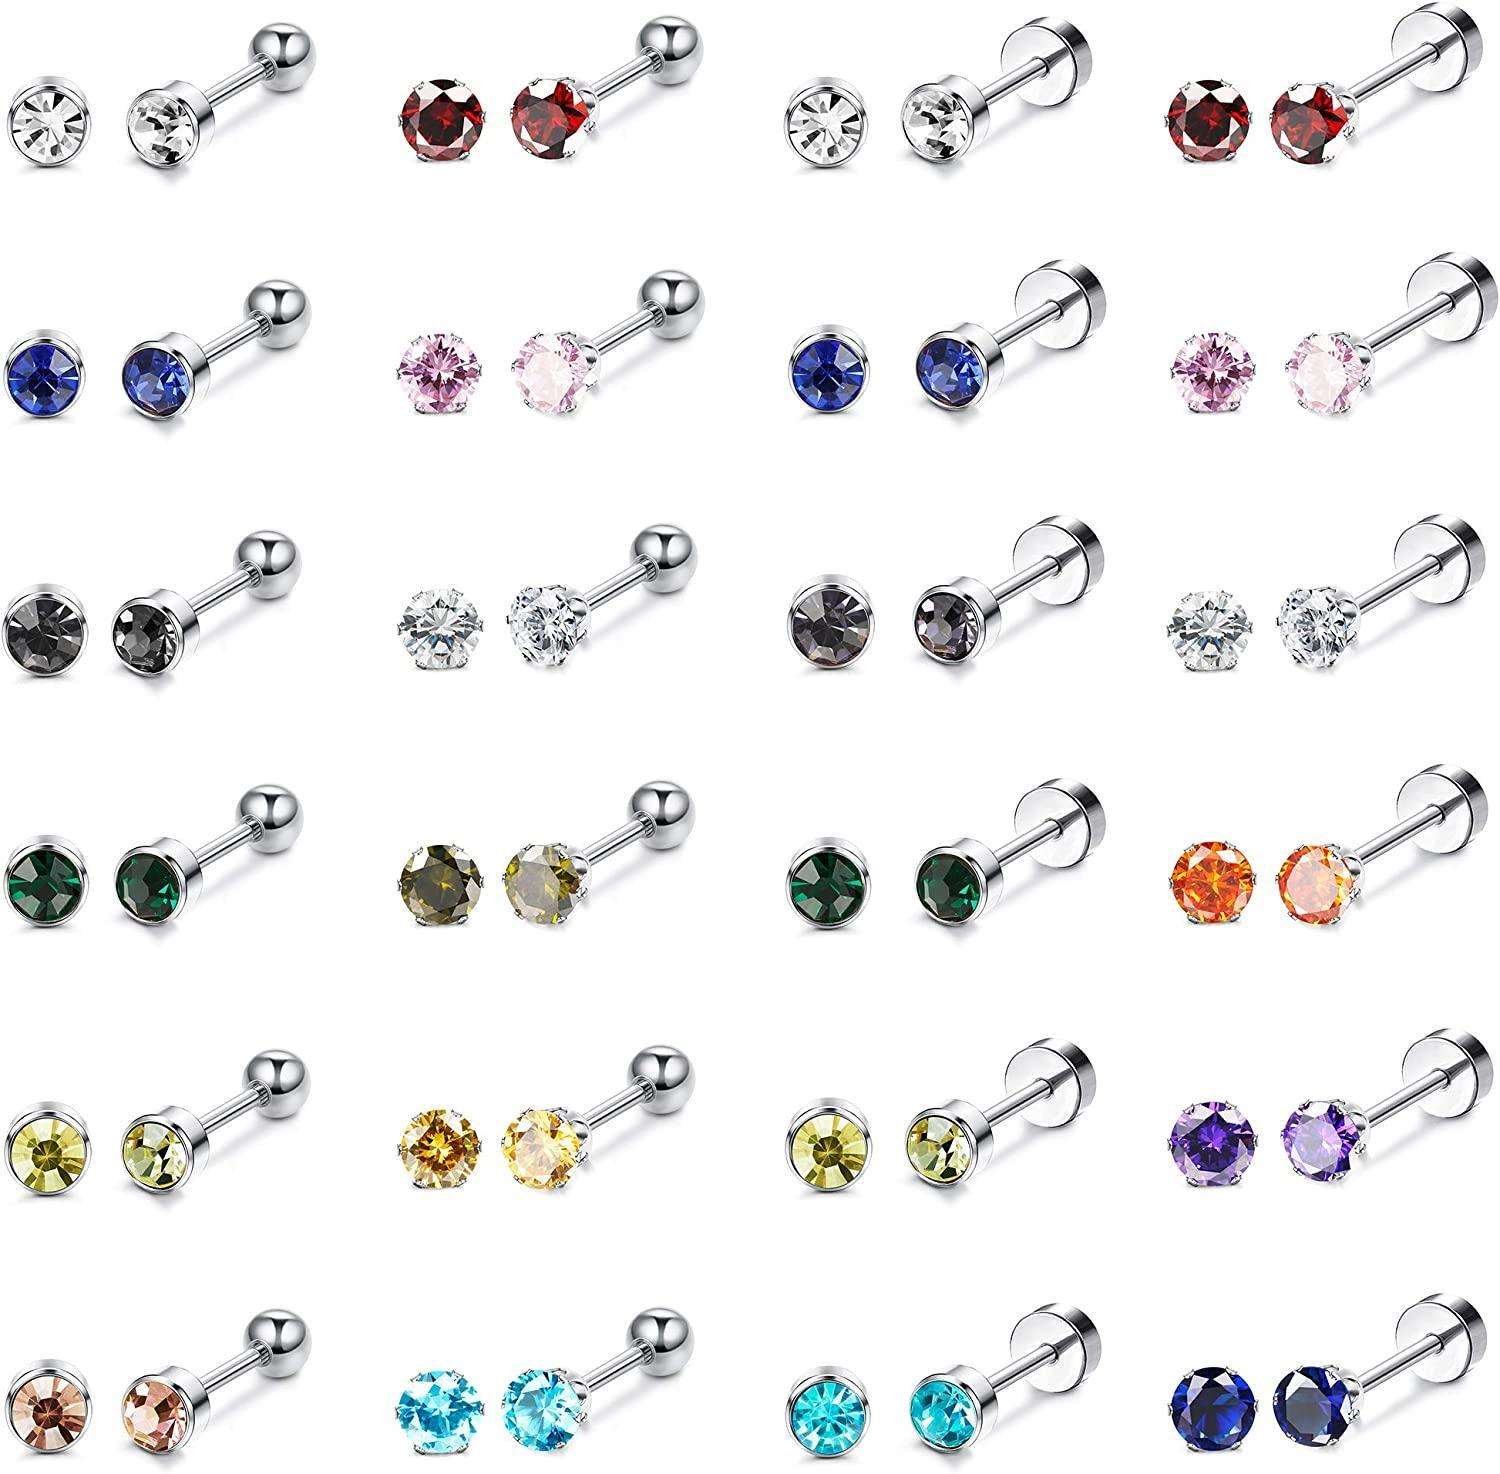 24 Pairs Stainless CZ Stud Earrings for Women Men Multicolor Cubic Zirconia Helix Earrings Tragus Ear Piercing Earrings Set Flat Back Cartilage Earring Stud 4mm